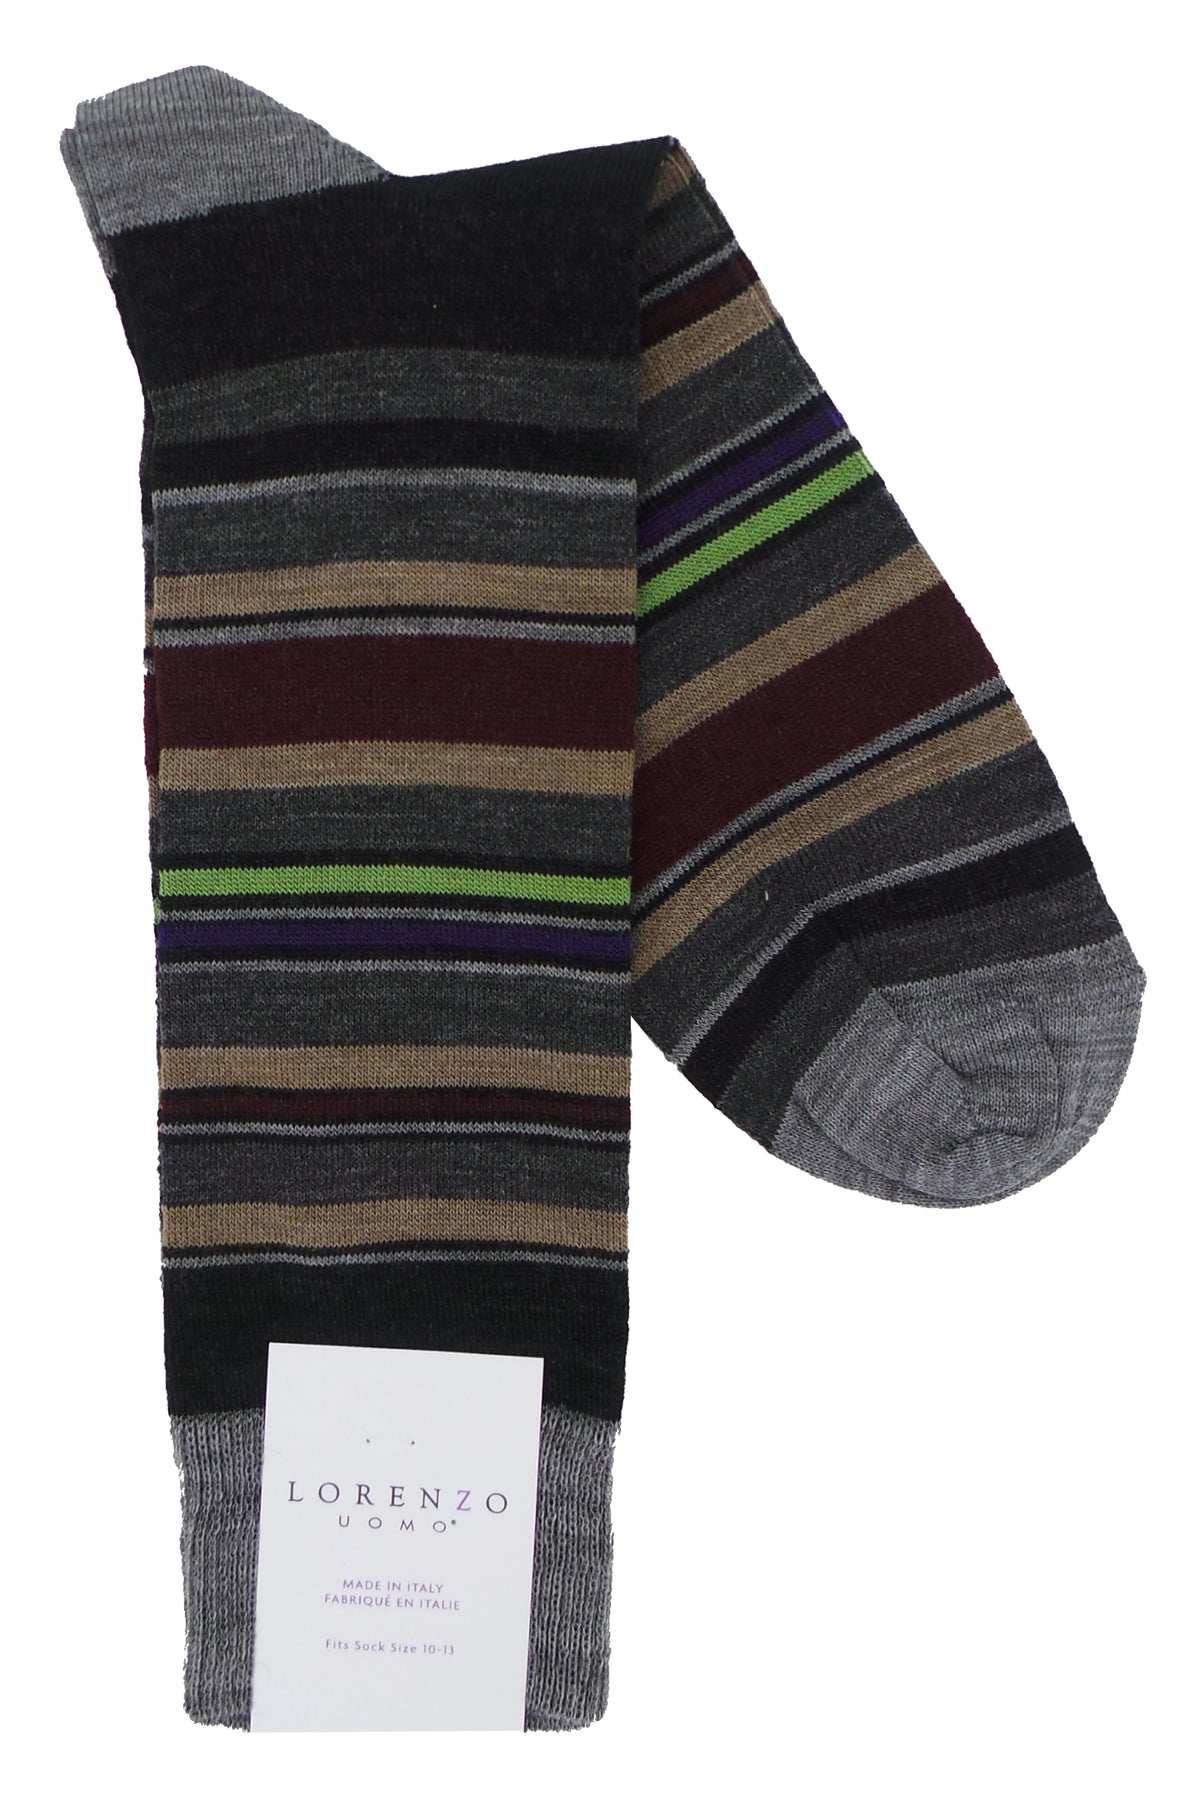 Lorenzo Uomo Multi Stripes Merino Wool Blend Socks